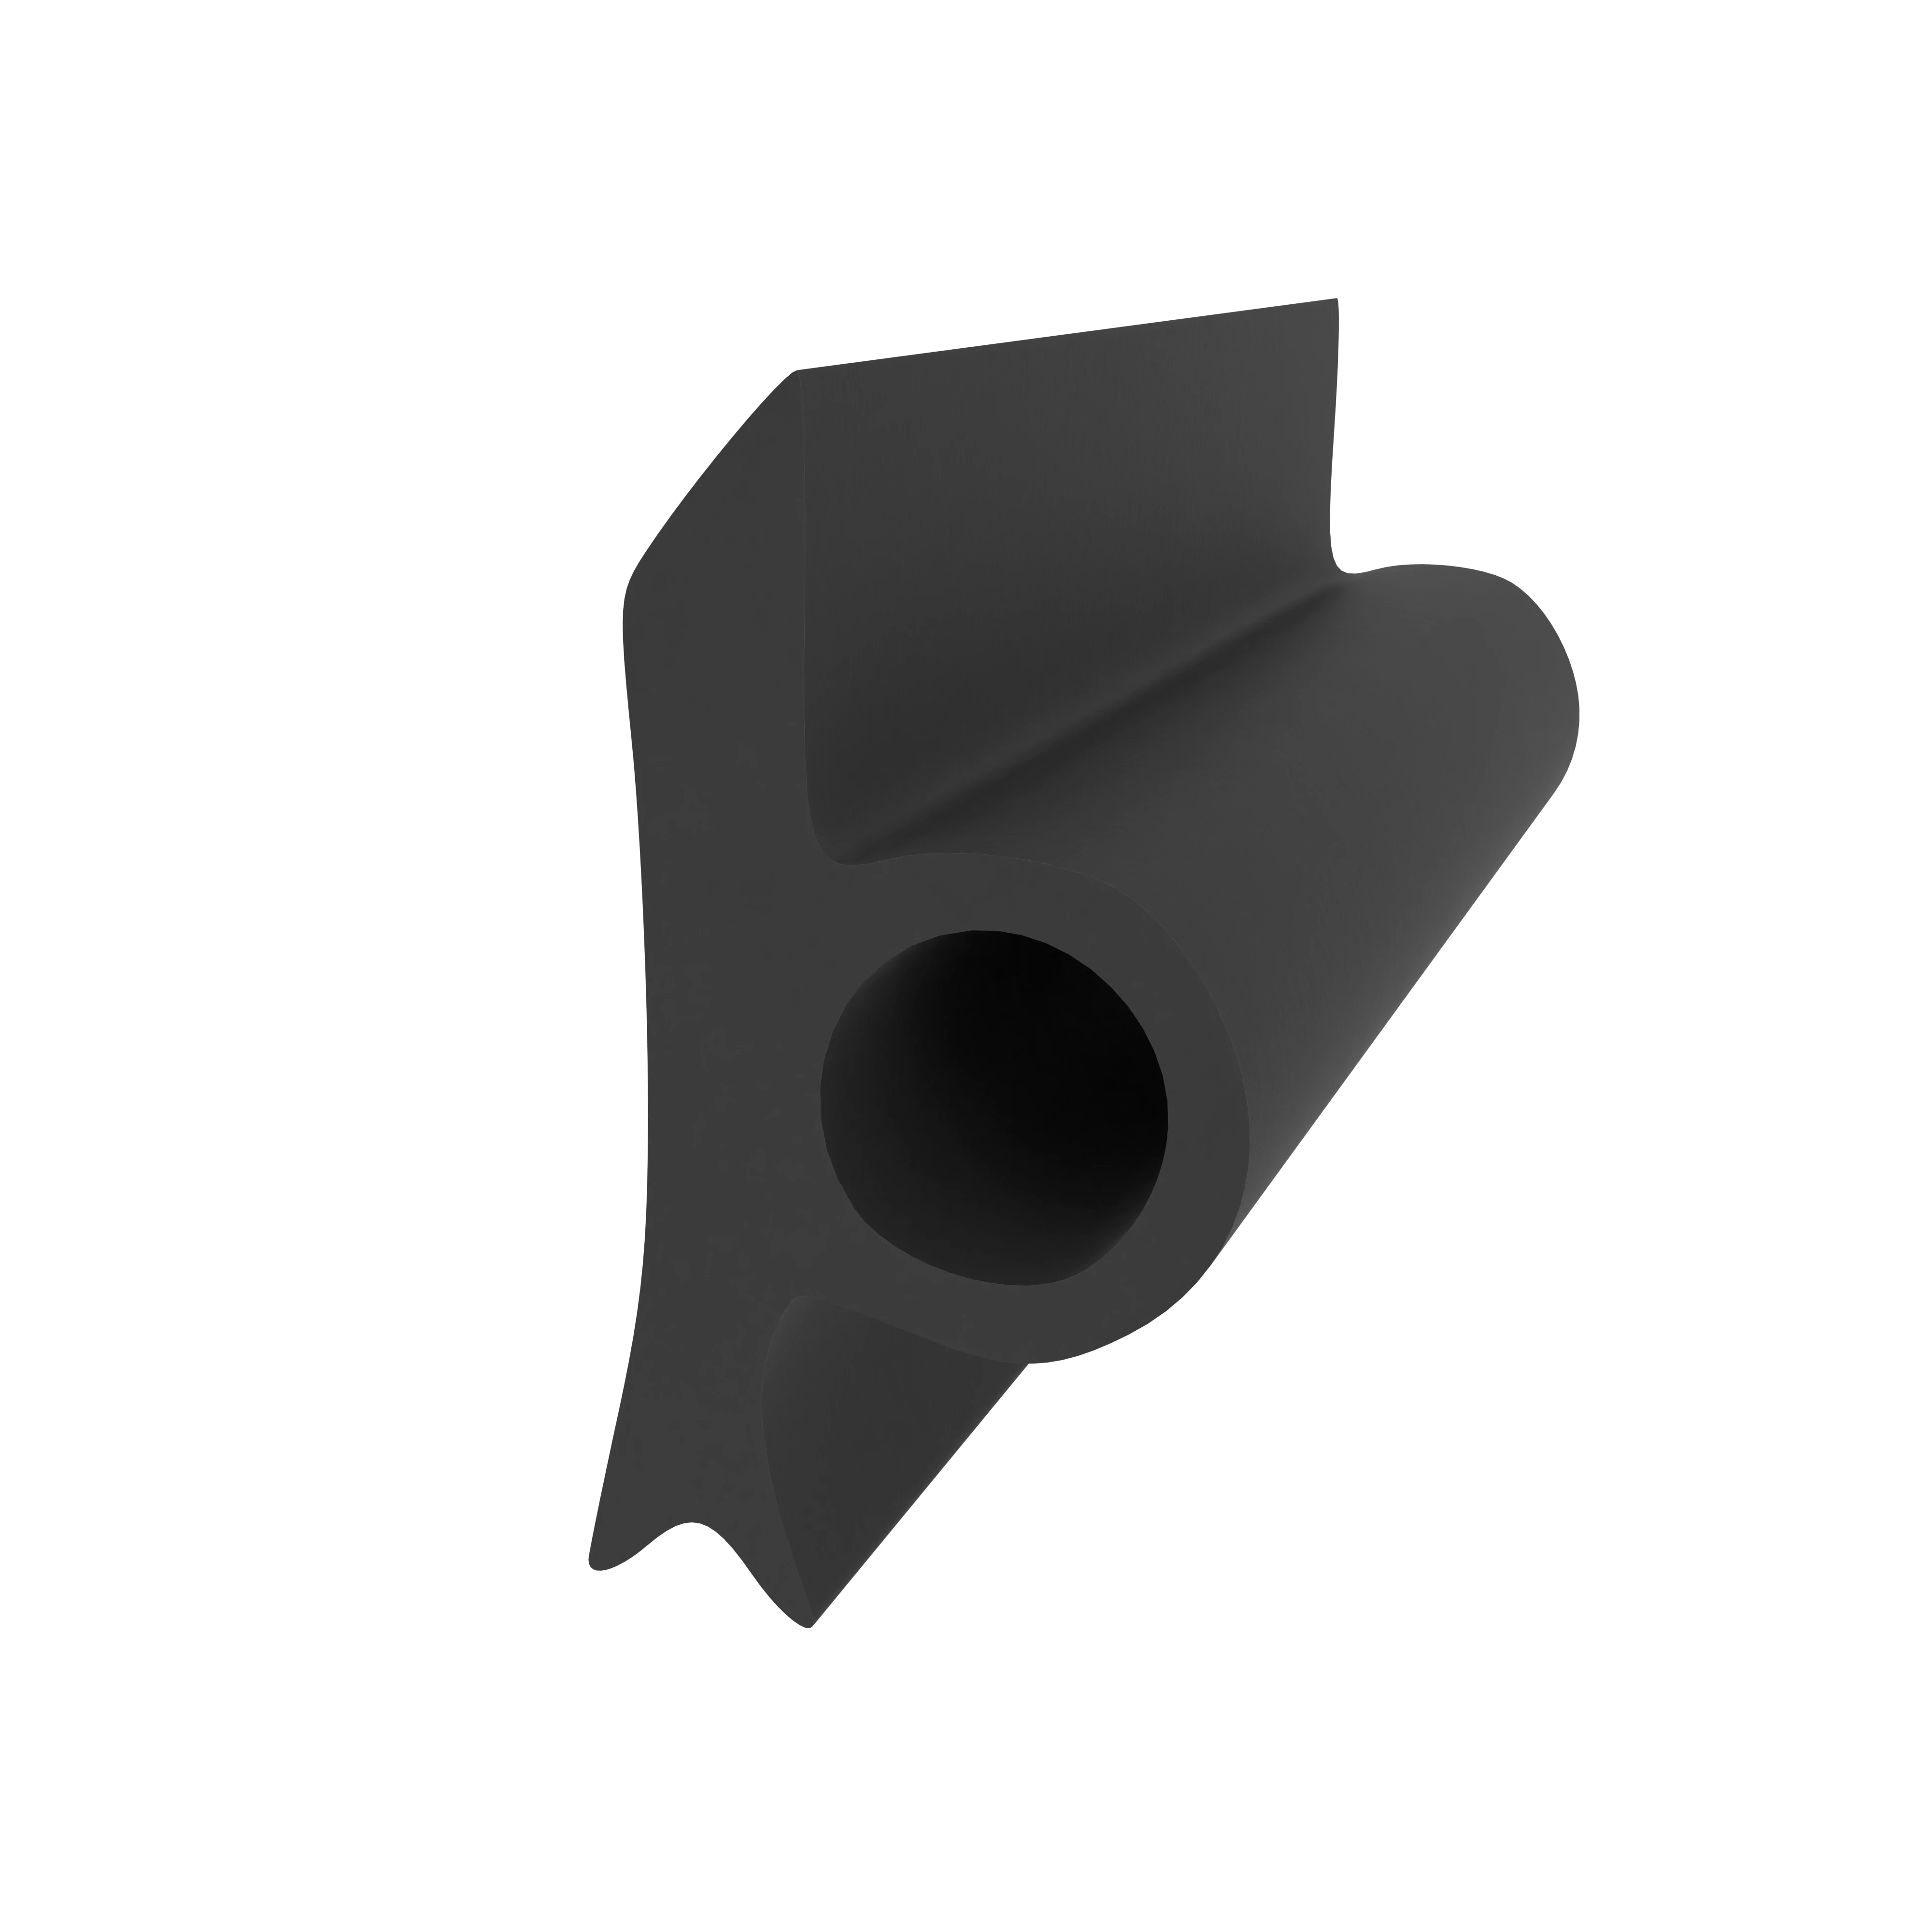 Anschlagdichtung für seitlichen Anschlag | 10 mm Höhe | Farbe: schwarz 